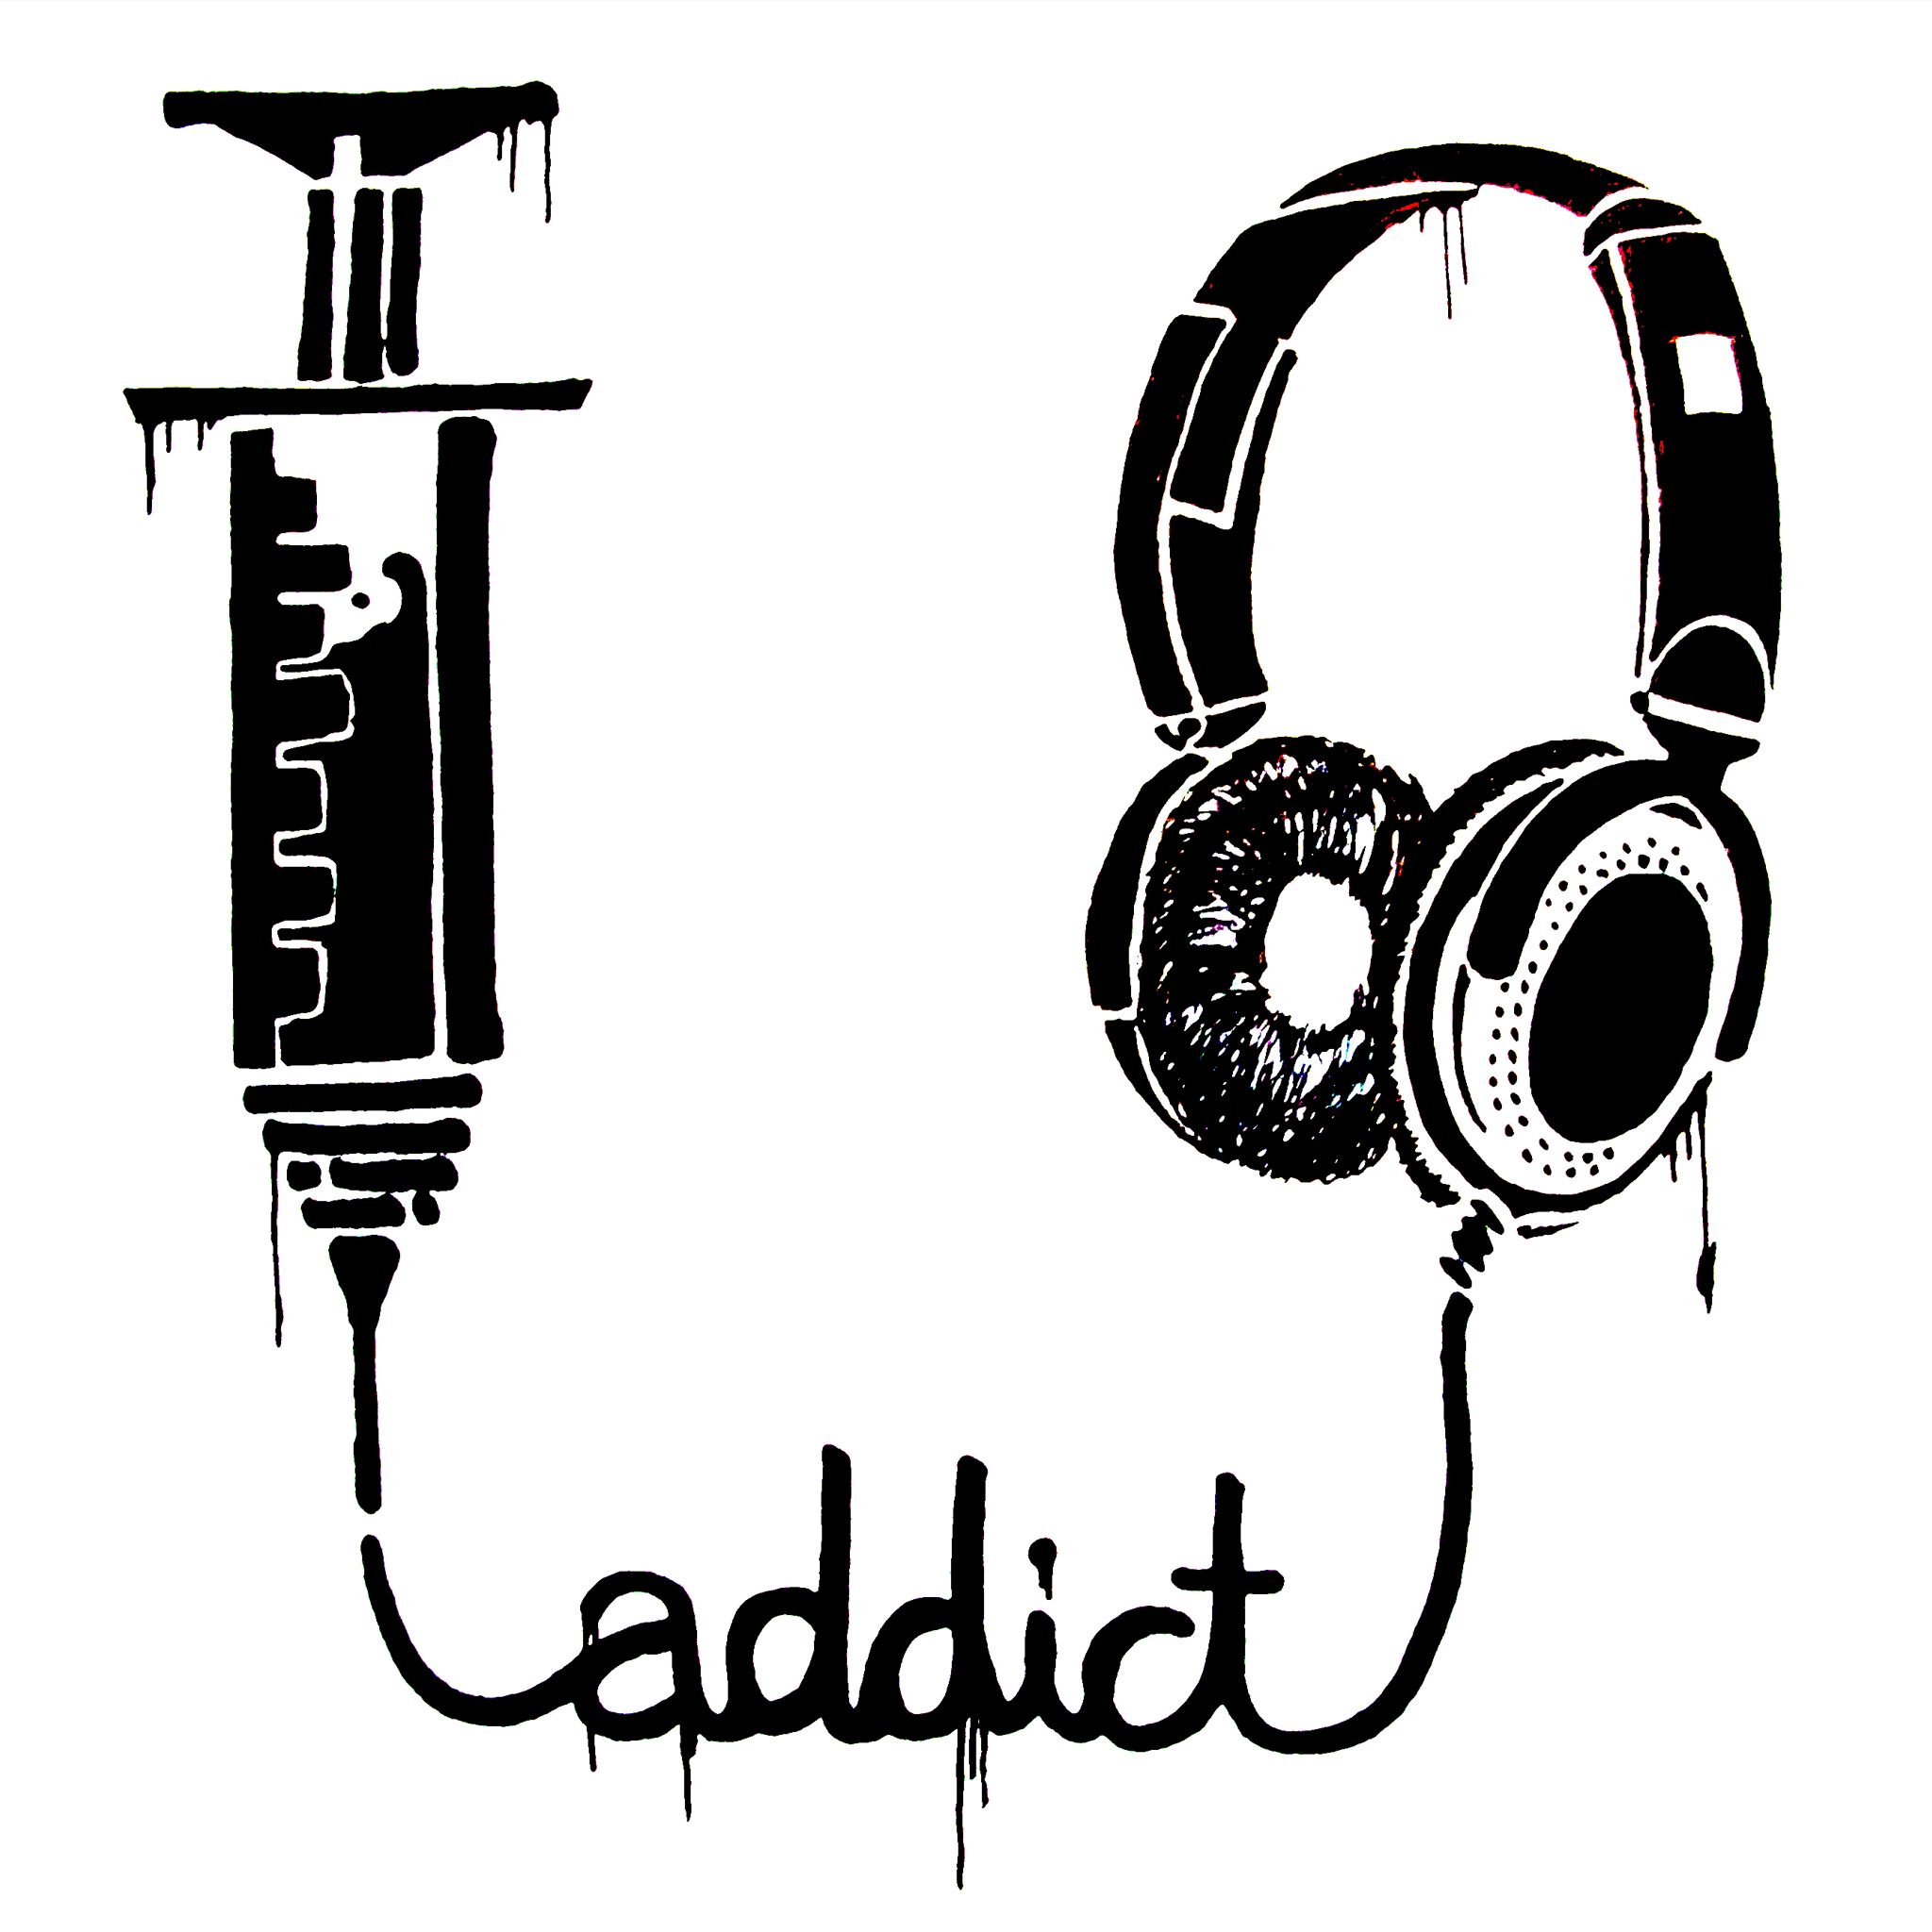 Music Addict Retina Wallpaper for iPhone Pro Max, X, 6